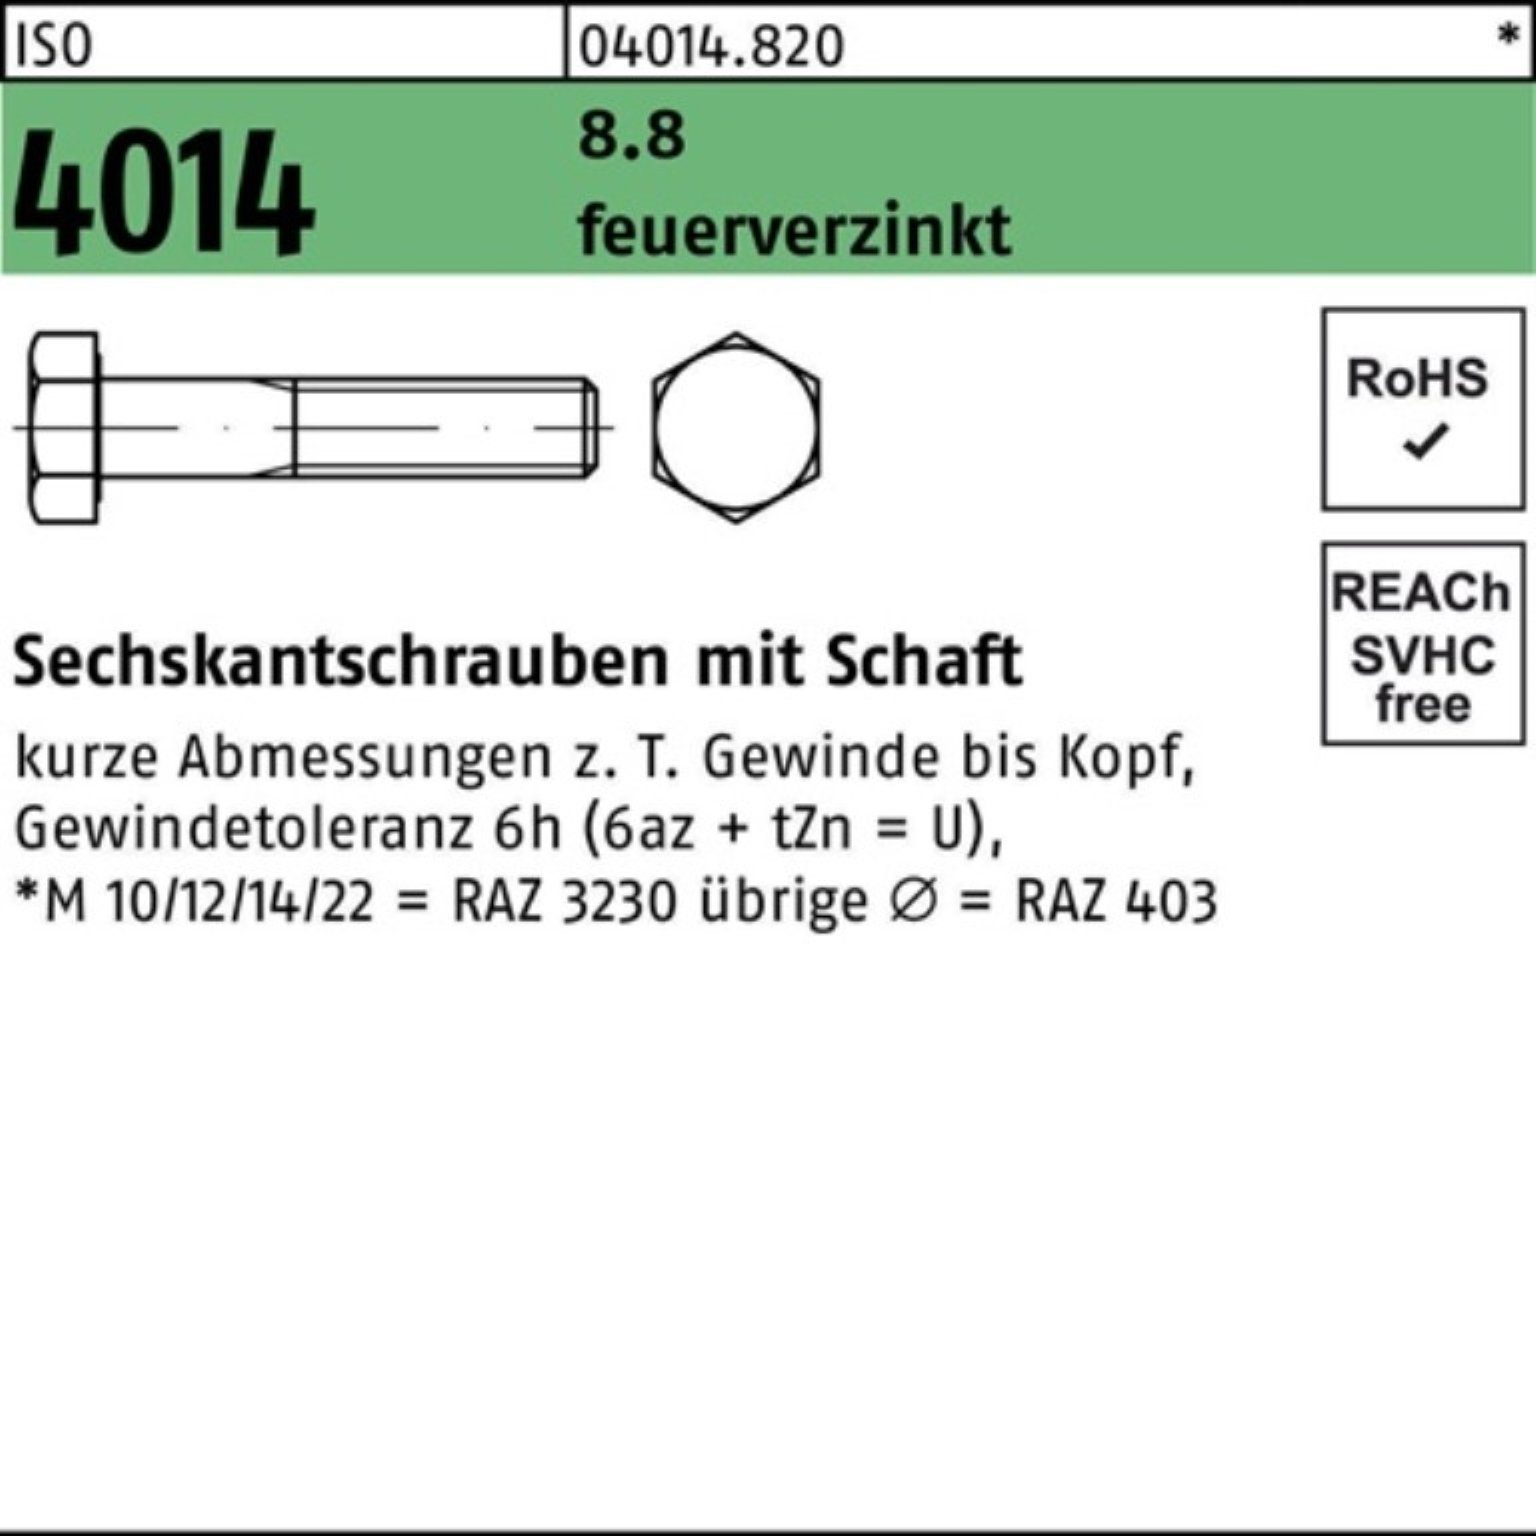 Bufab Sechskantschraube 100er Pack Sechskantschraube ISO 4014 Schaft M30x 100 8.8 feuerverz. 1